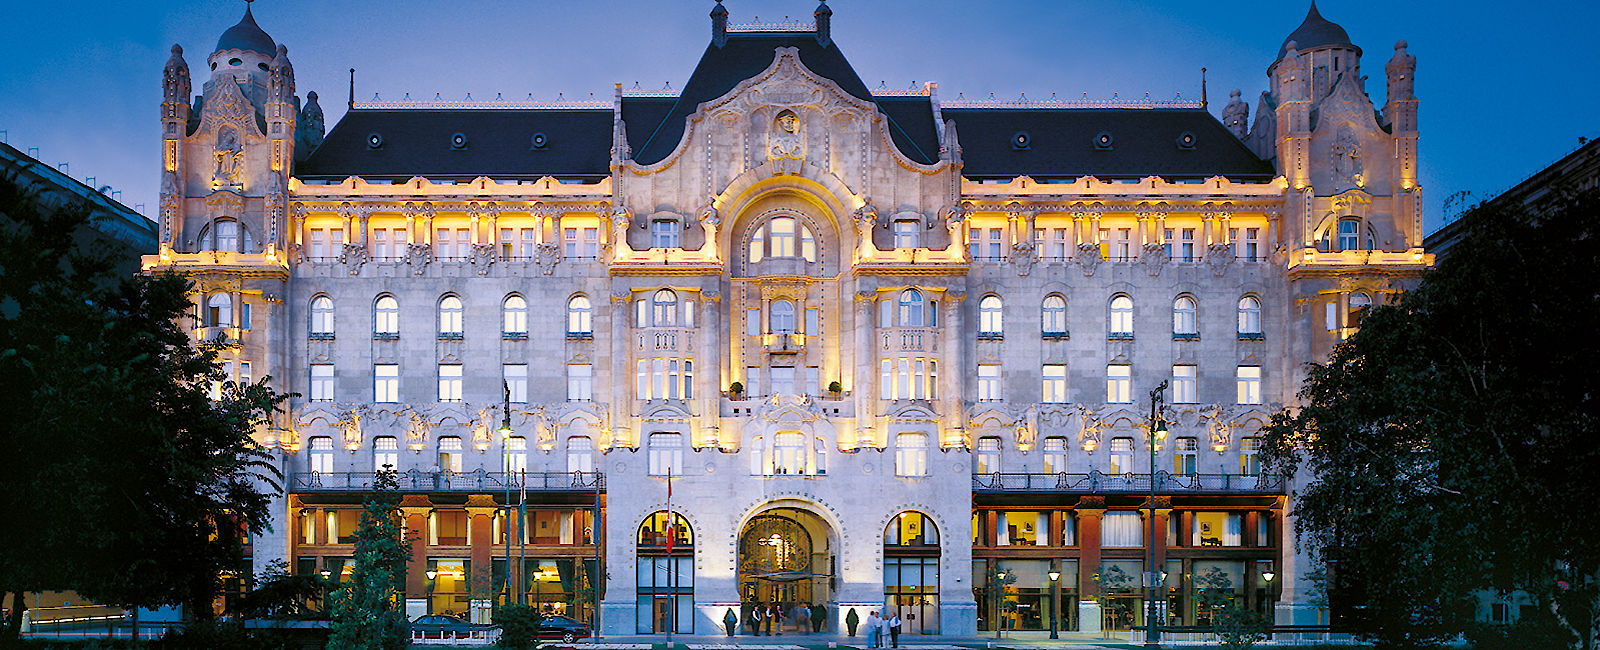 HOTEL TIPPS
 Four Seasons Hotel Gresham Palace 
 Luxus Anwesen unweit der Donau 